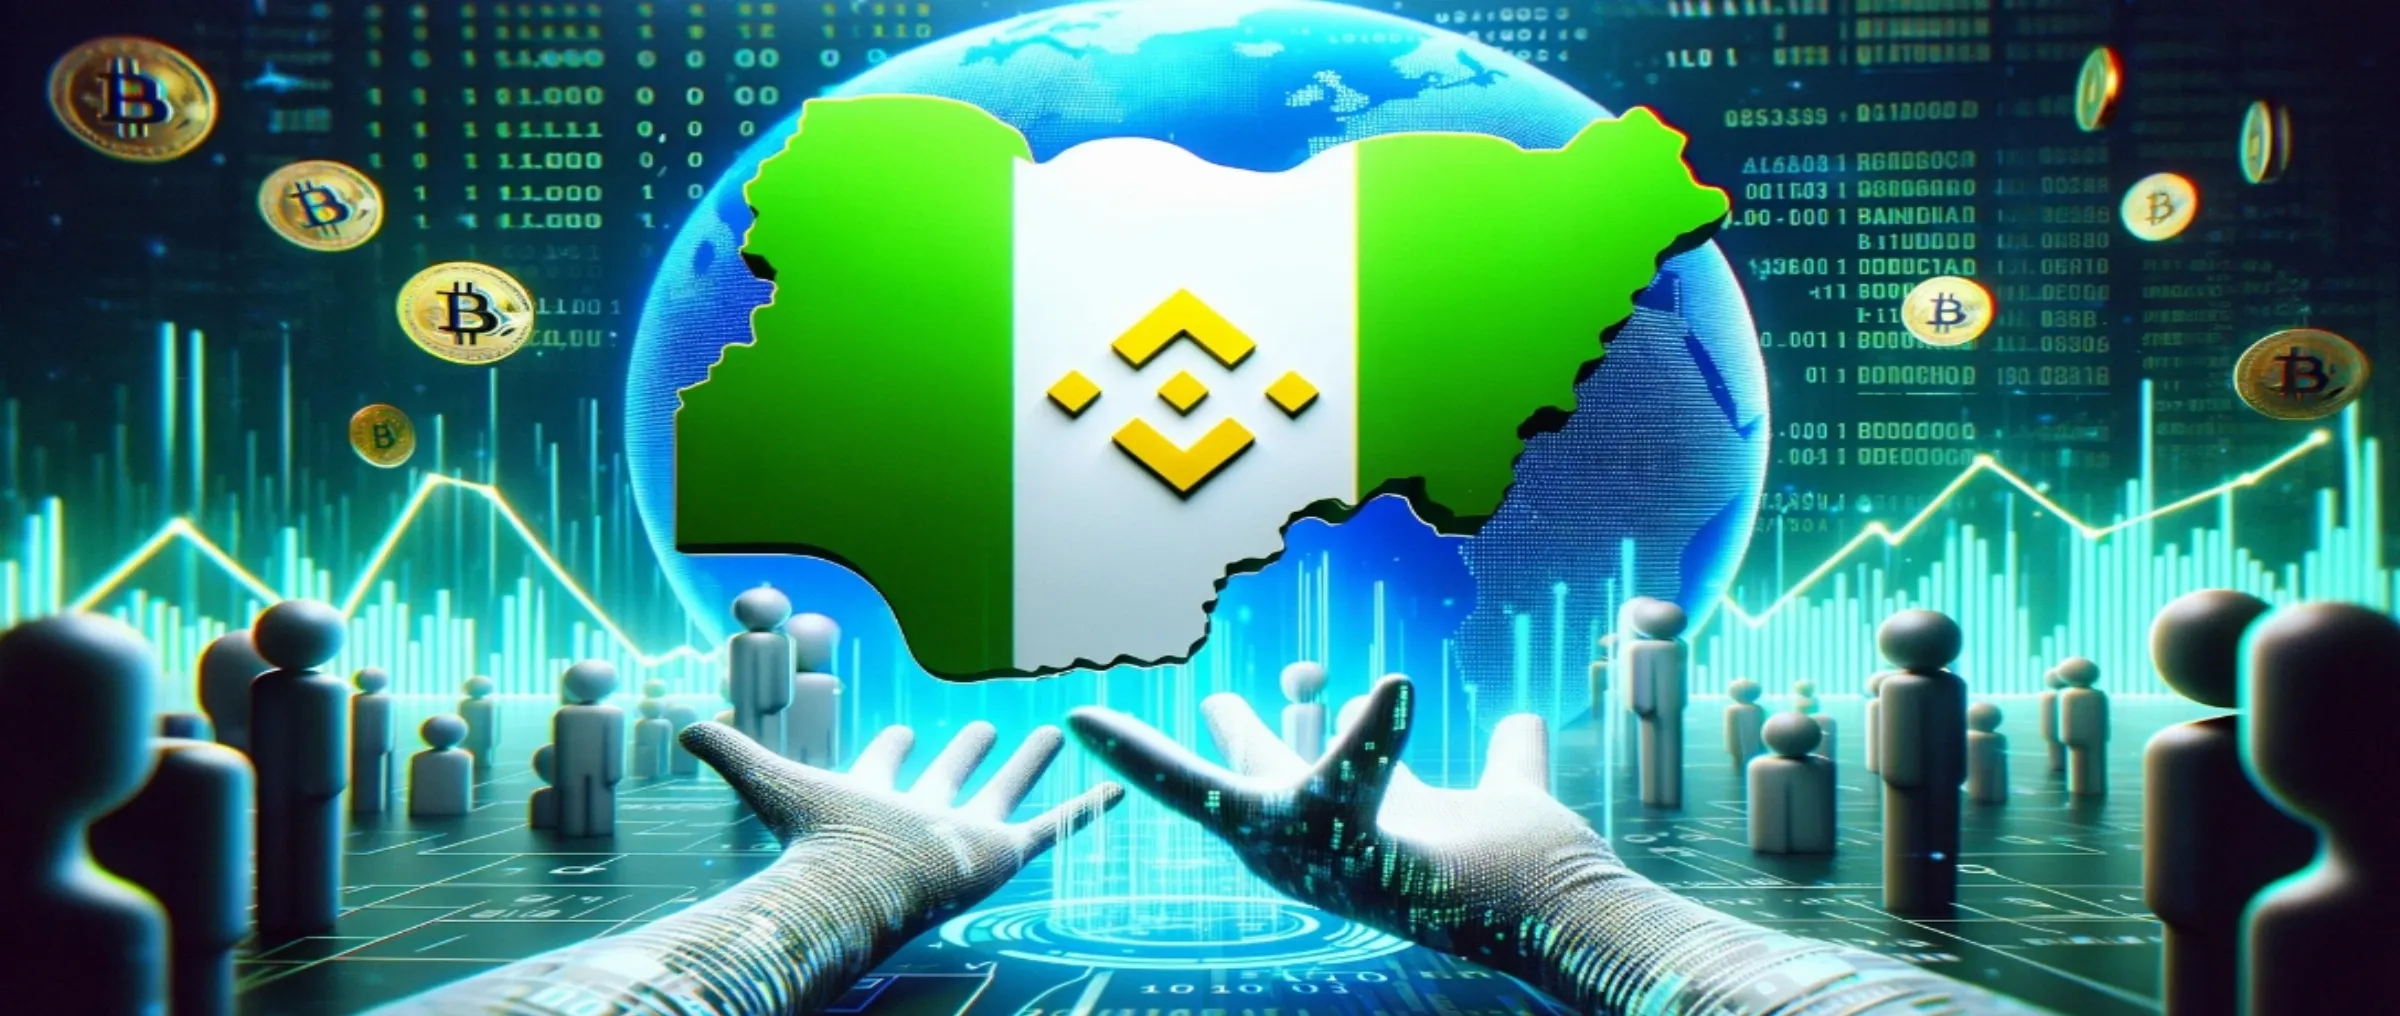 Нигерия запросила у Binance данные о транзакциях за последние шесть месяцев